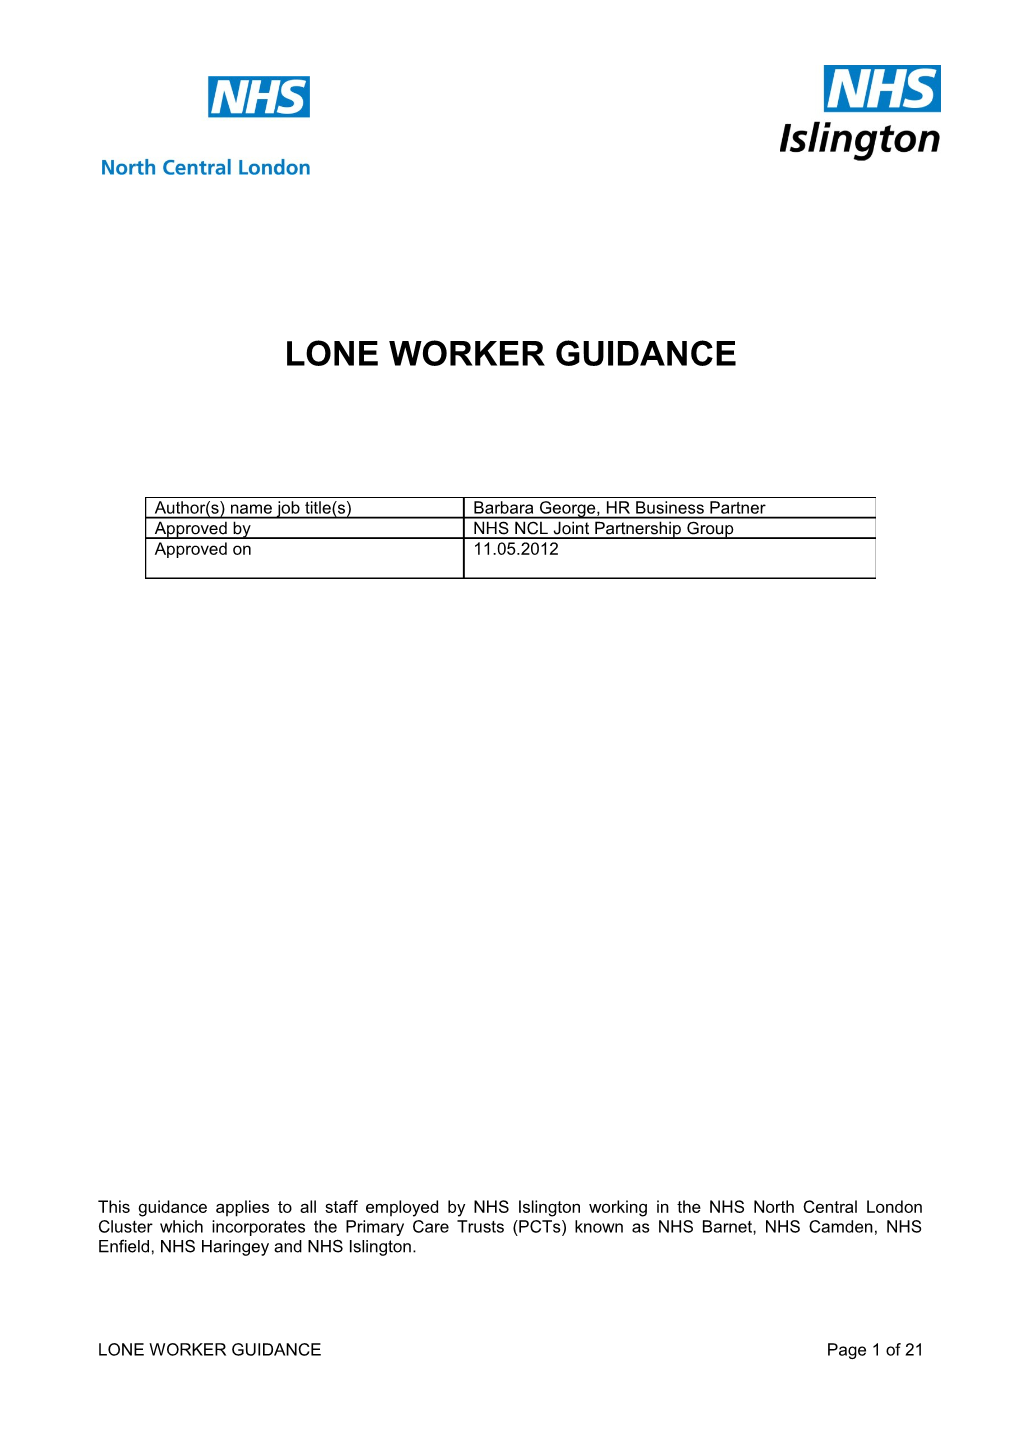 Lone Worker Guidance